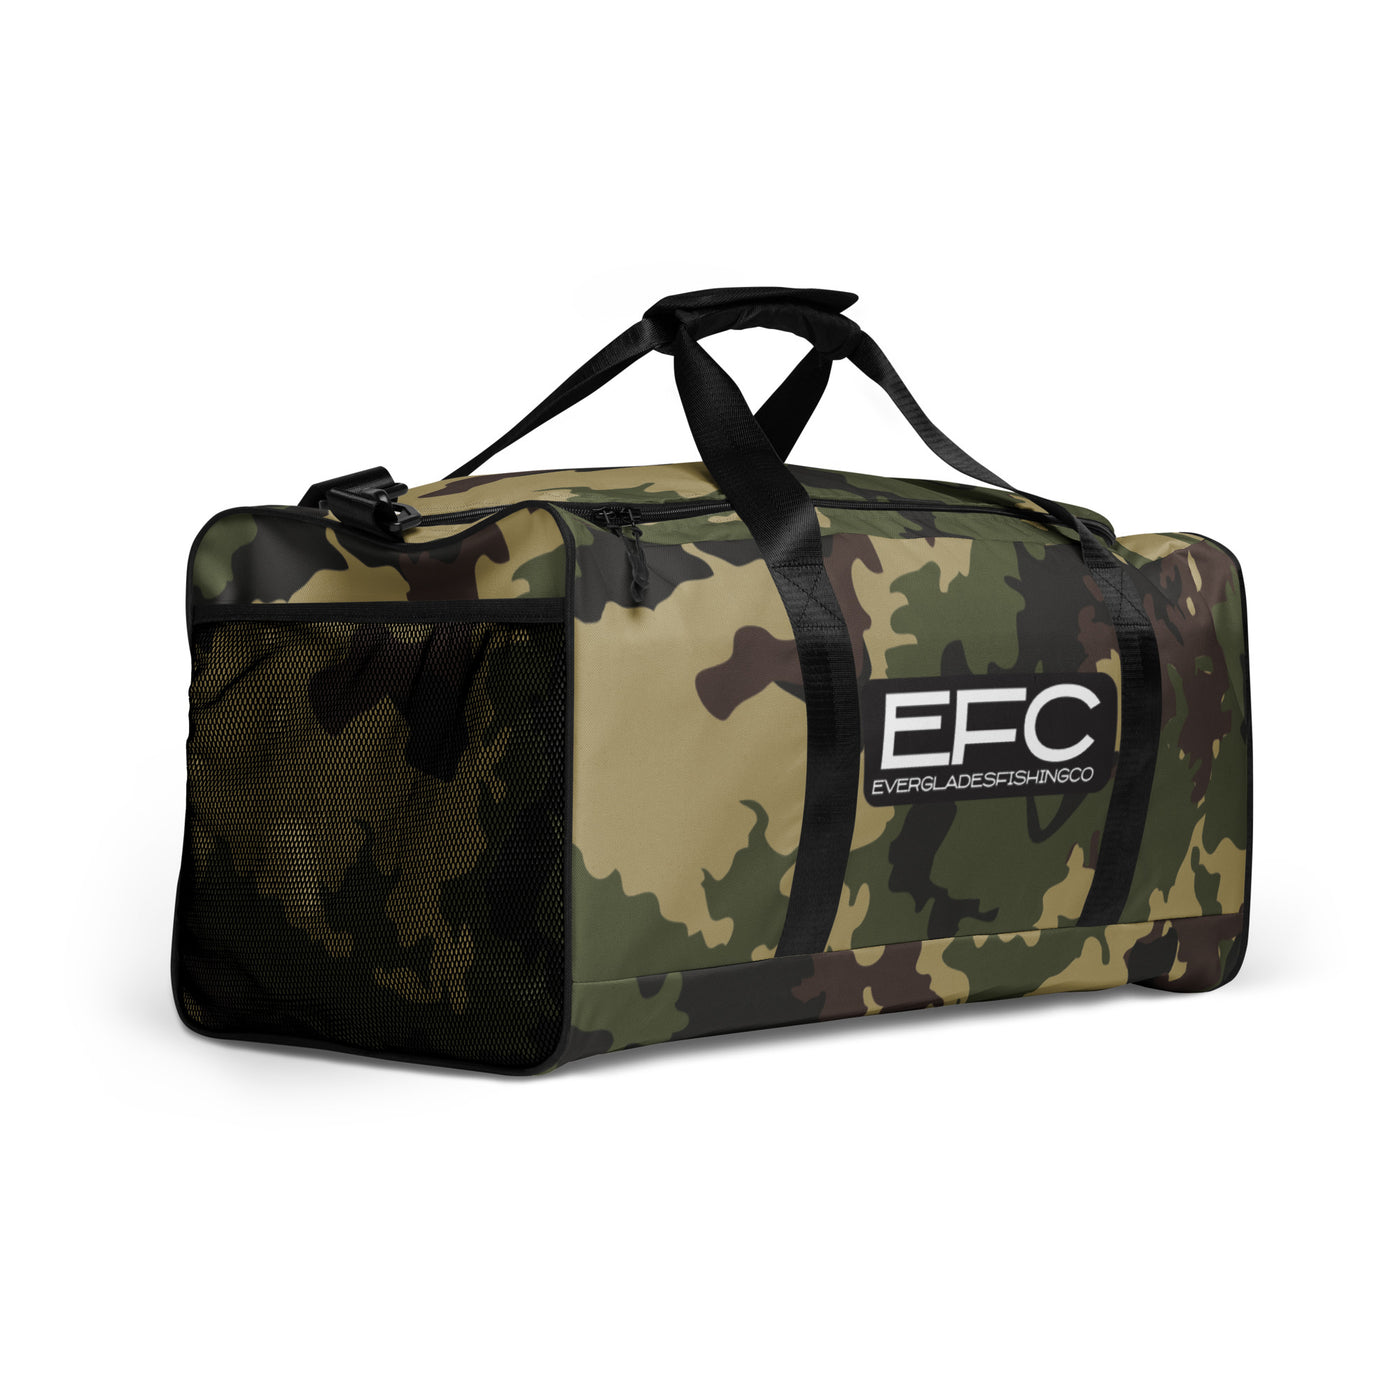 EFC Camo Duffle bag